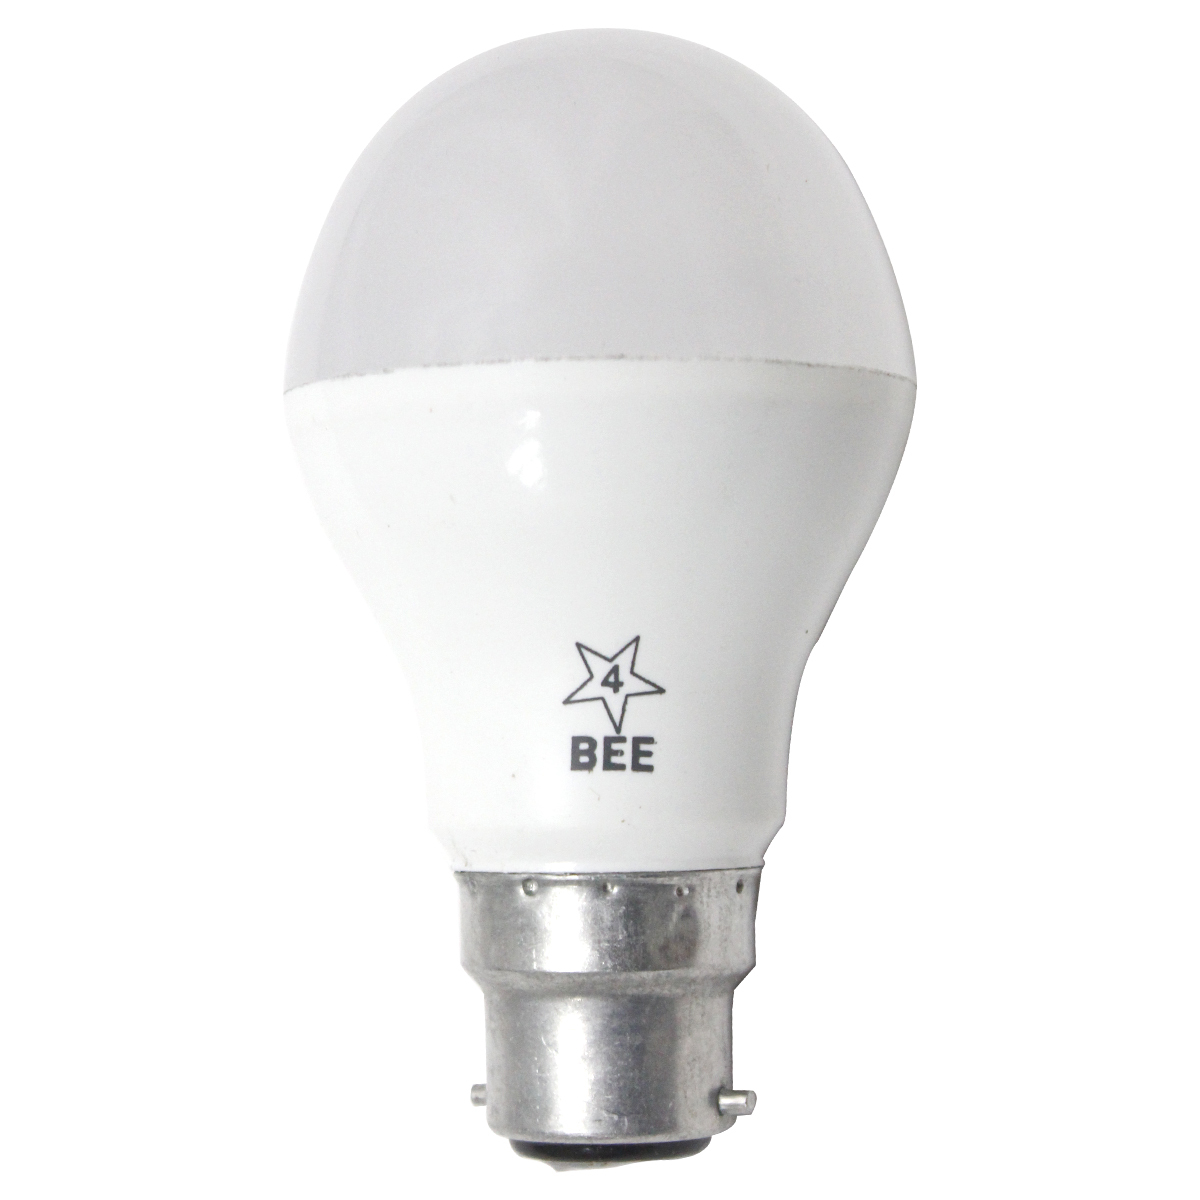 Eveready LED Bulb 5W